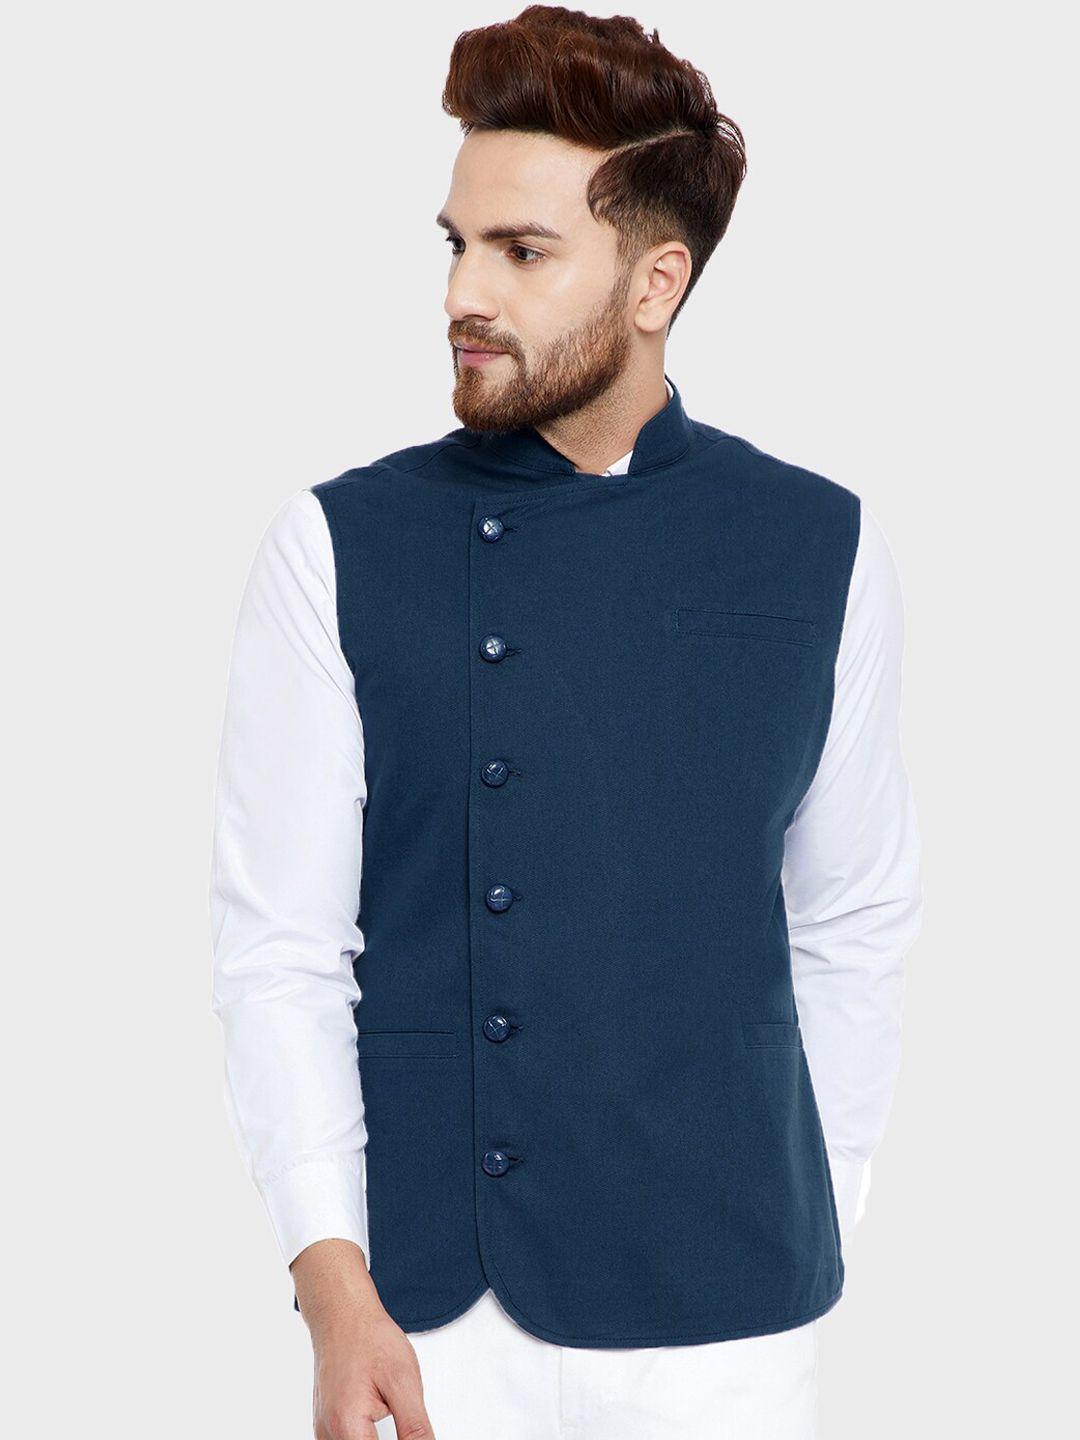 hypernation-men-teal-blue-solid-mandarin-collar-nehru-jacket